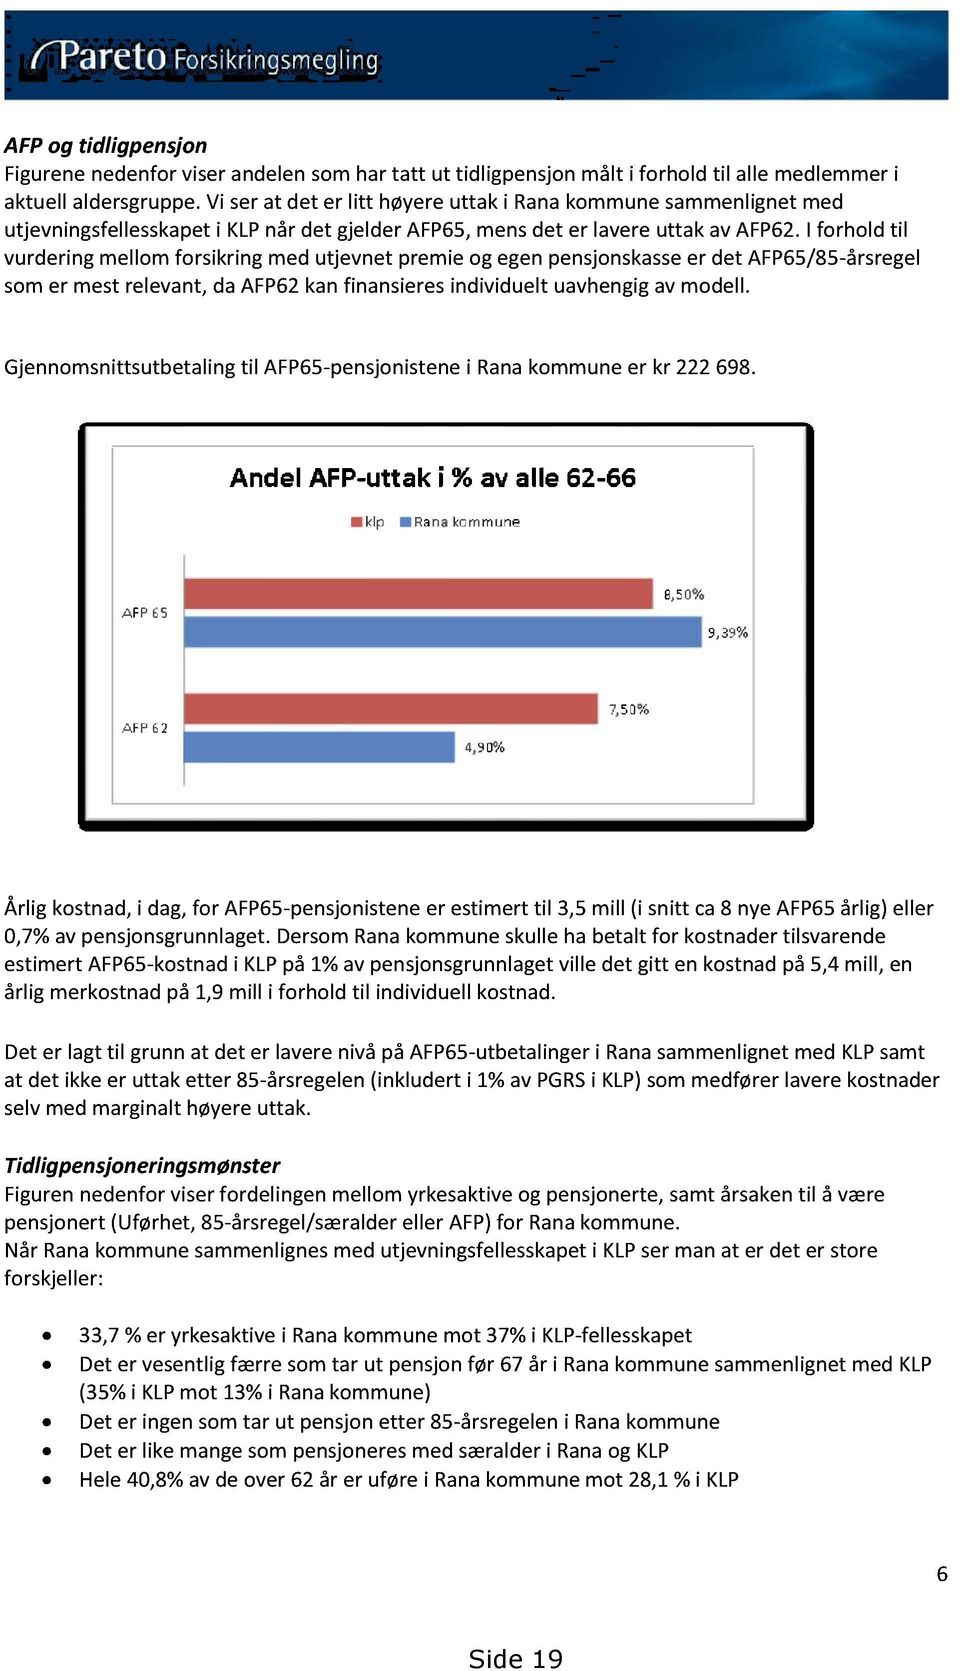 I forhold til vurderingmellomforsikringmed utjevnet premieog egenpensjonskasser det AFP65/85-årsregel somer mest relevant,da AFP62kanfinansieresindividueltuavhengig avmodell.